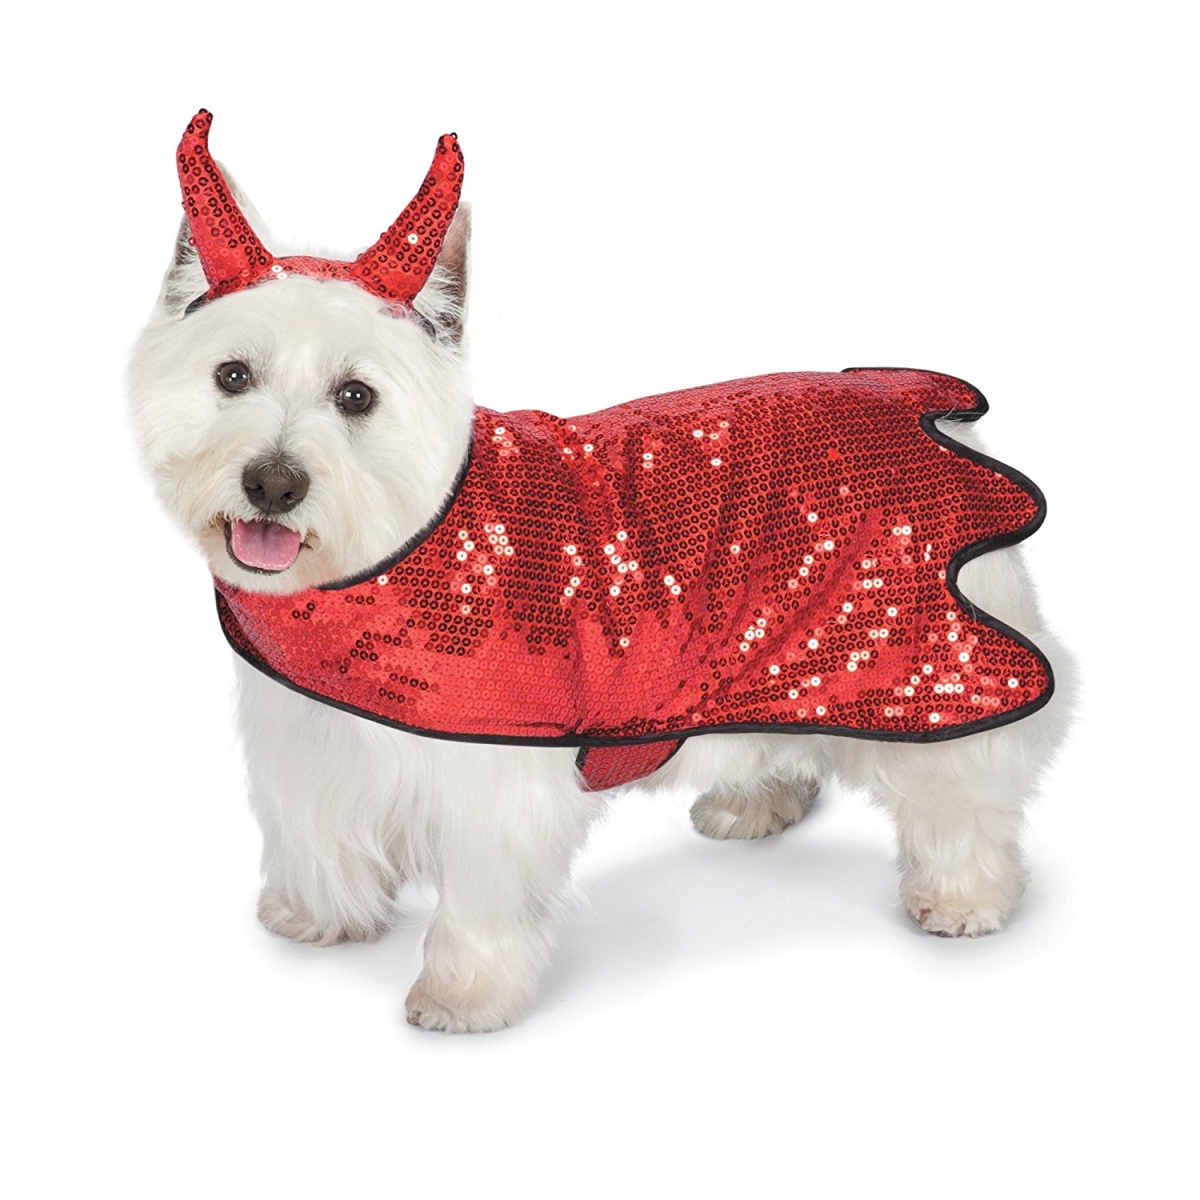 Sequin Devil Dog Costume - Large